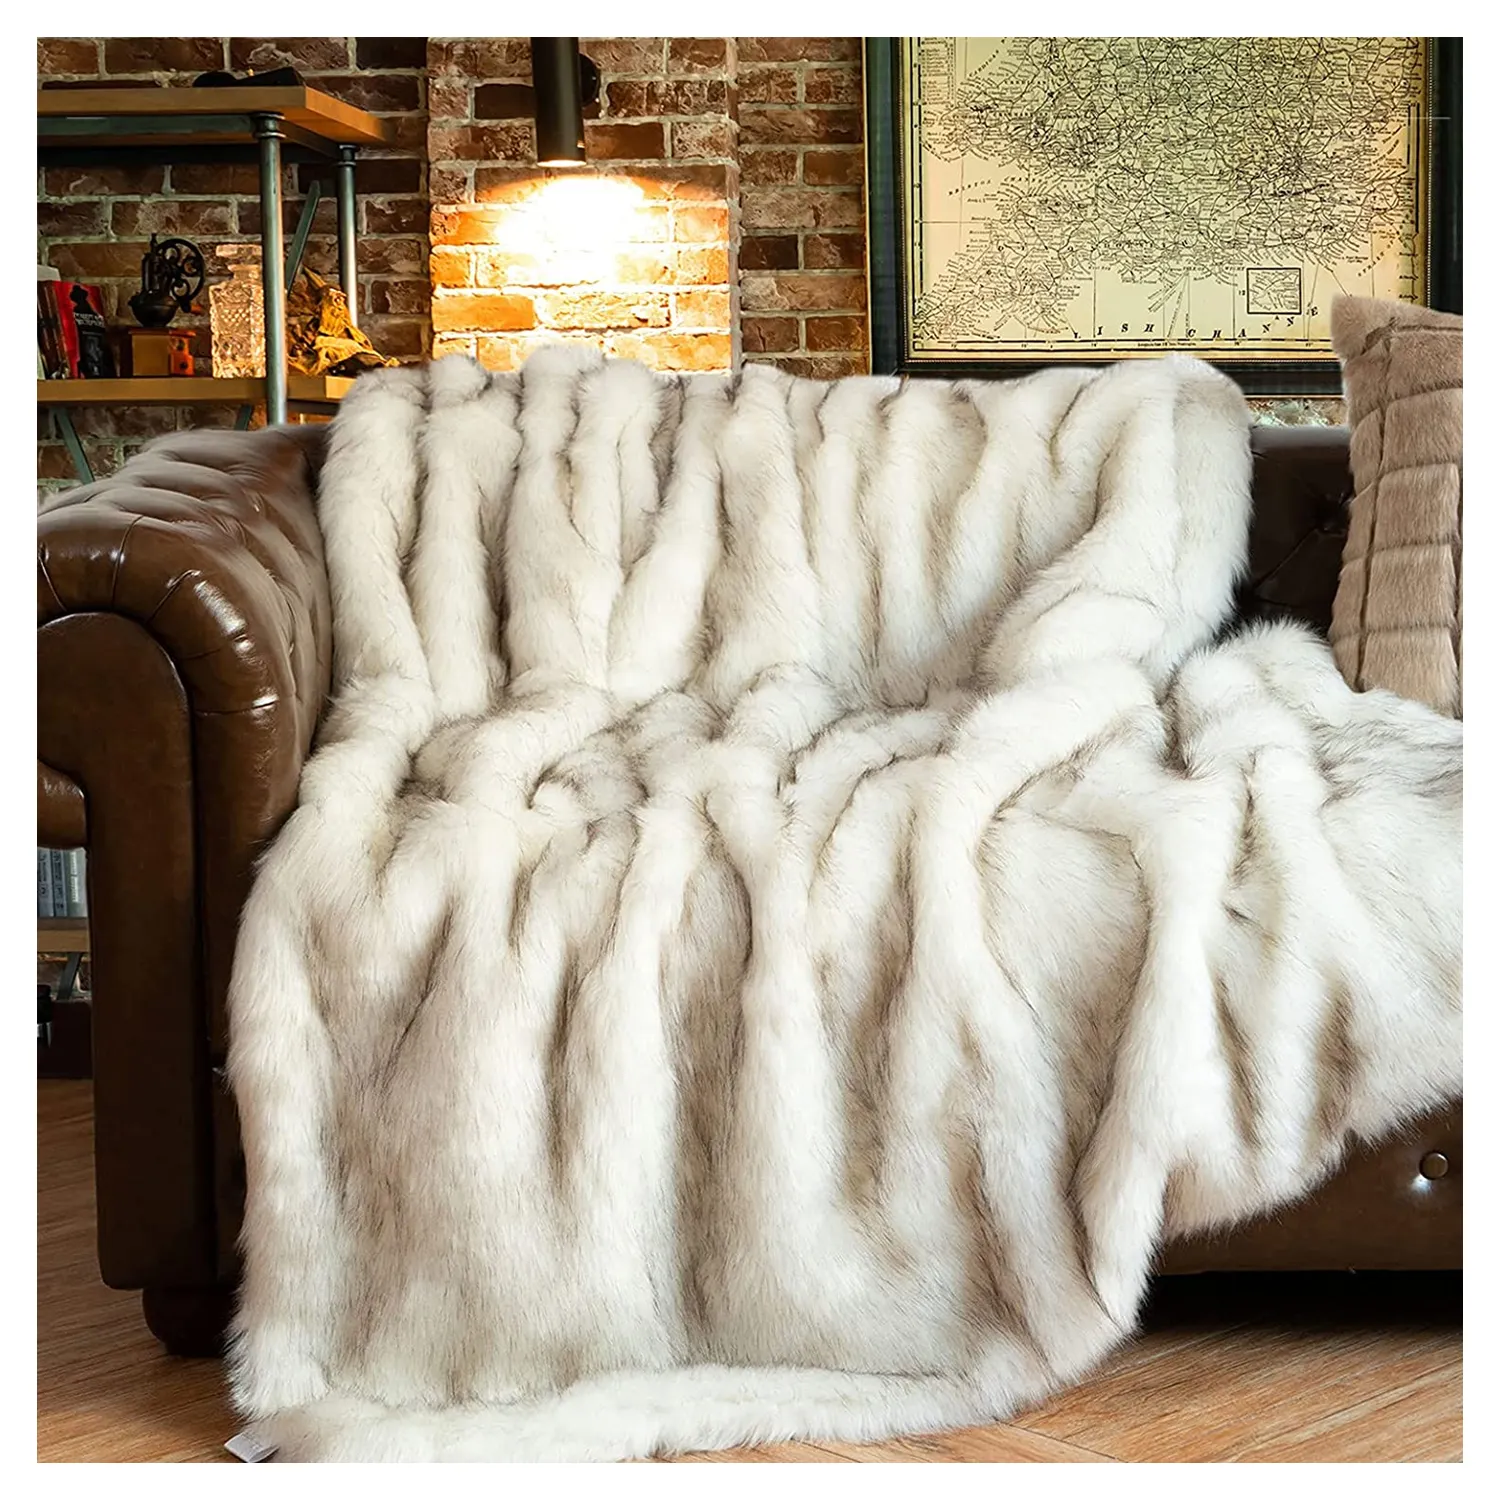 270 x 270 cm Heimdekor Sofa-Bett Luxus Deluxe zeitgenössische Nachahmung Volles Fox-Fell Haut wasserdichte Hundedecke